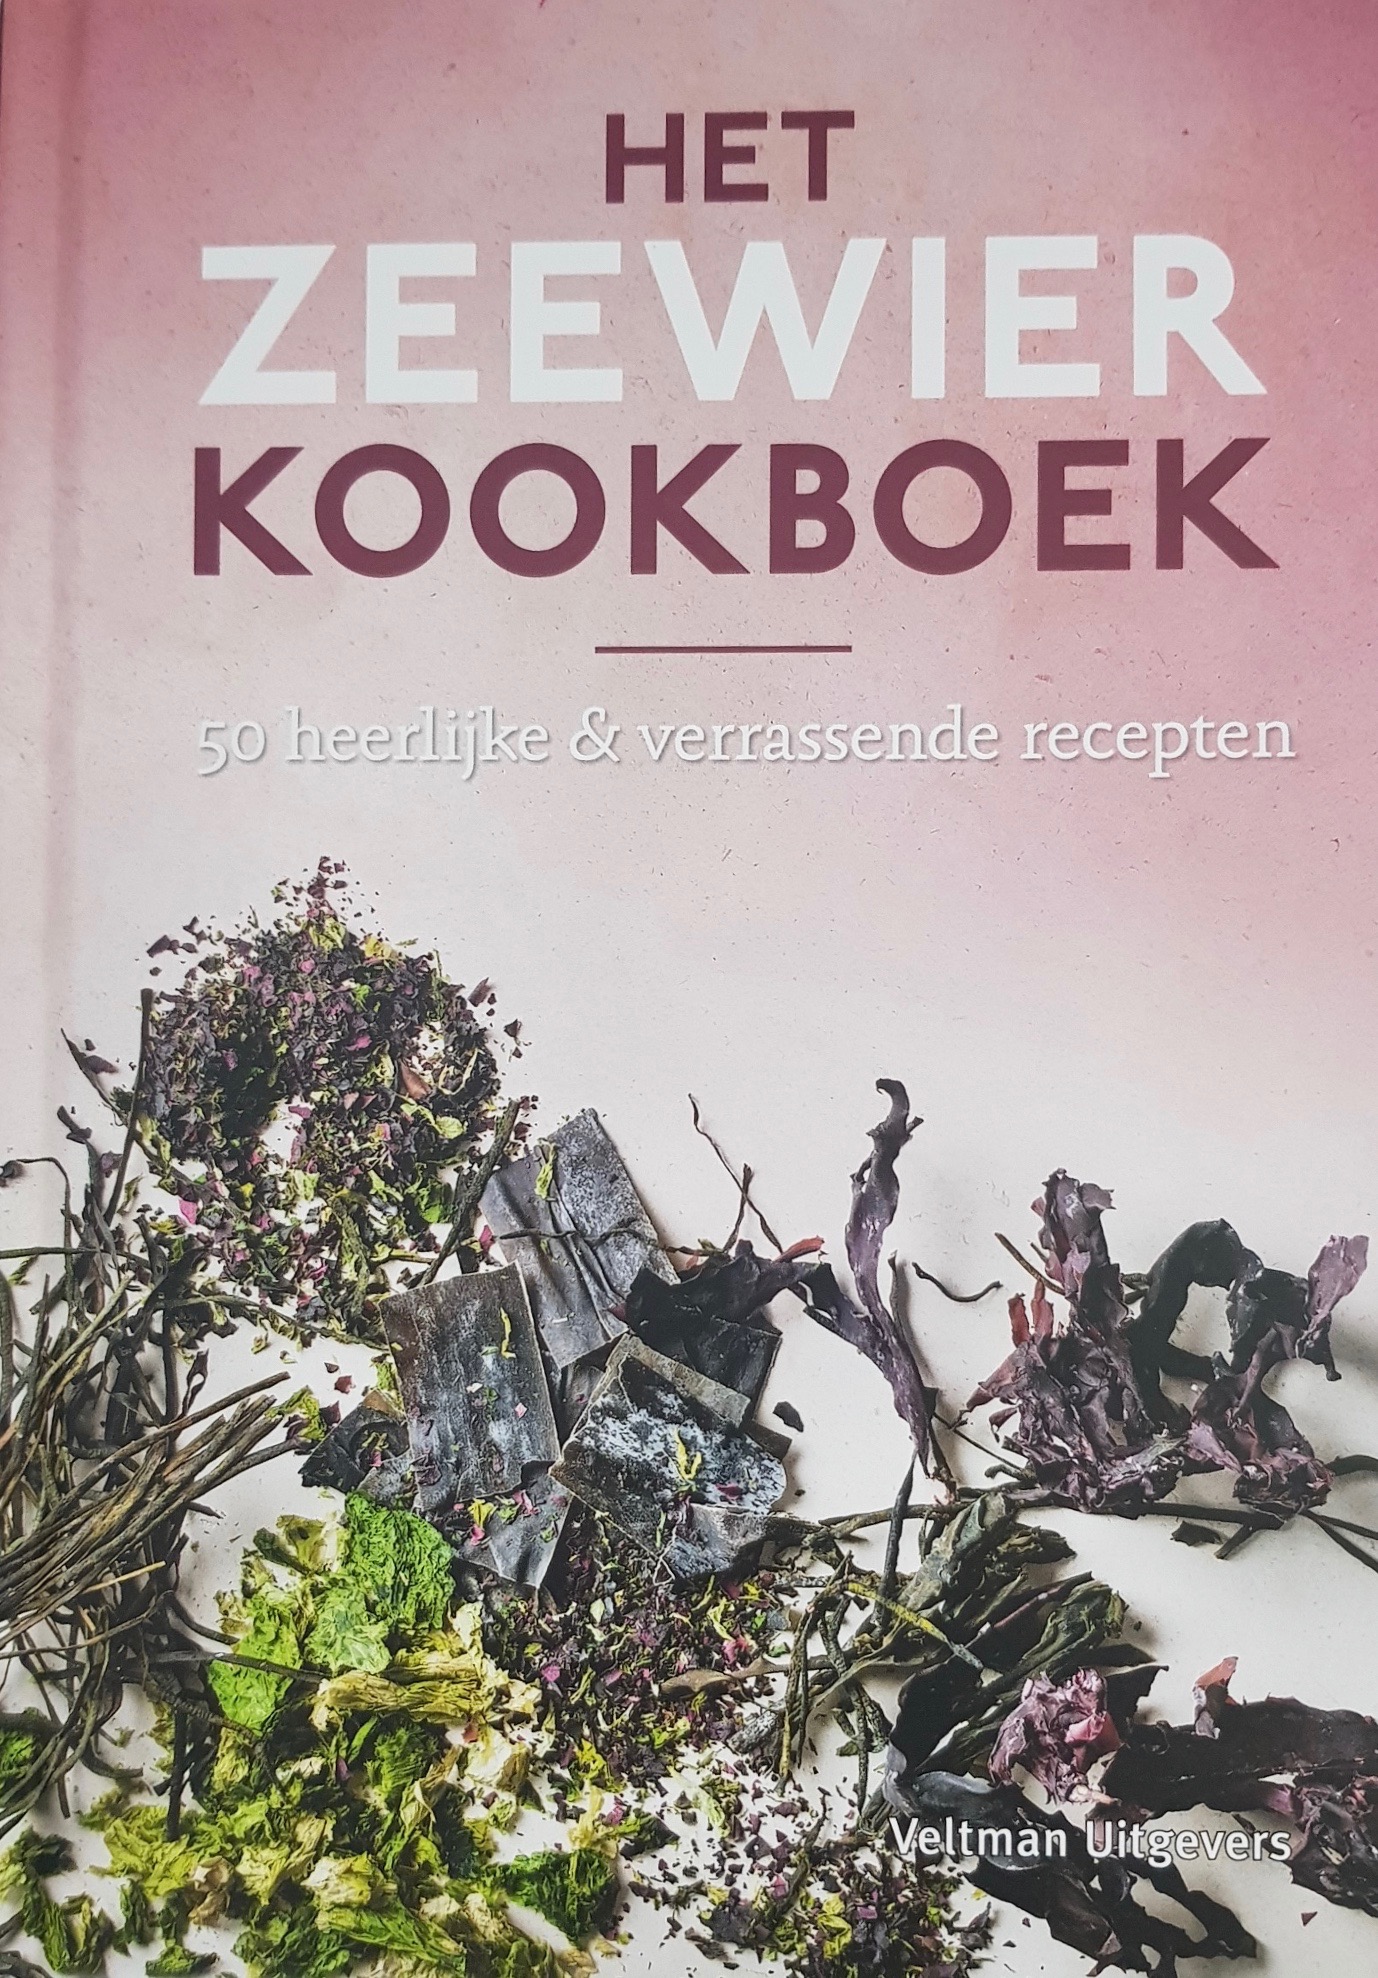 The seaweed cookbook